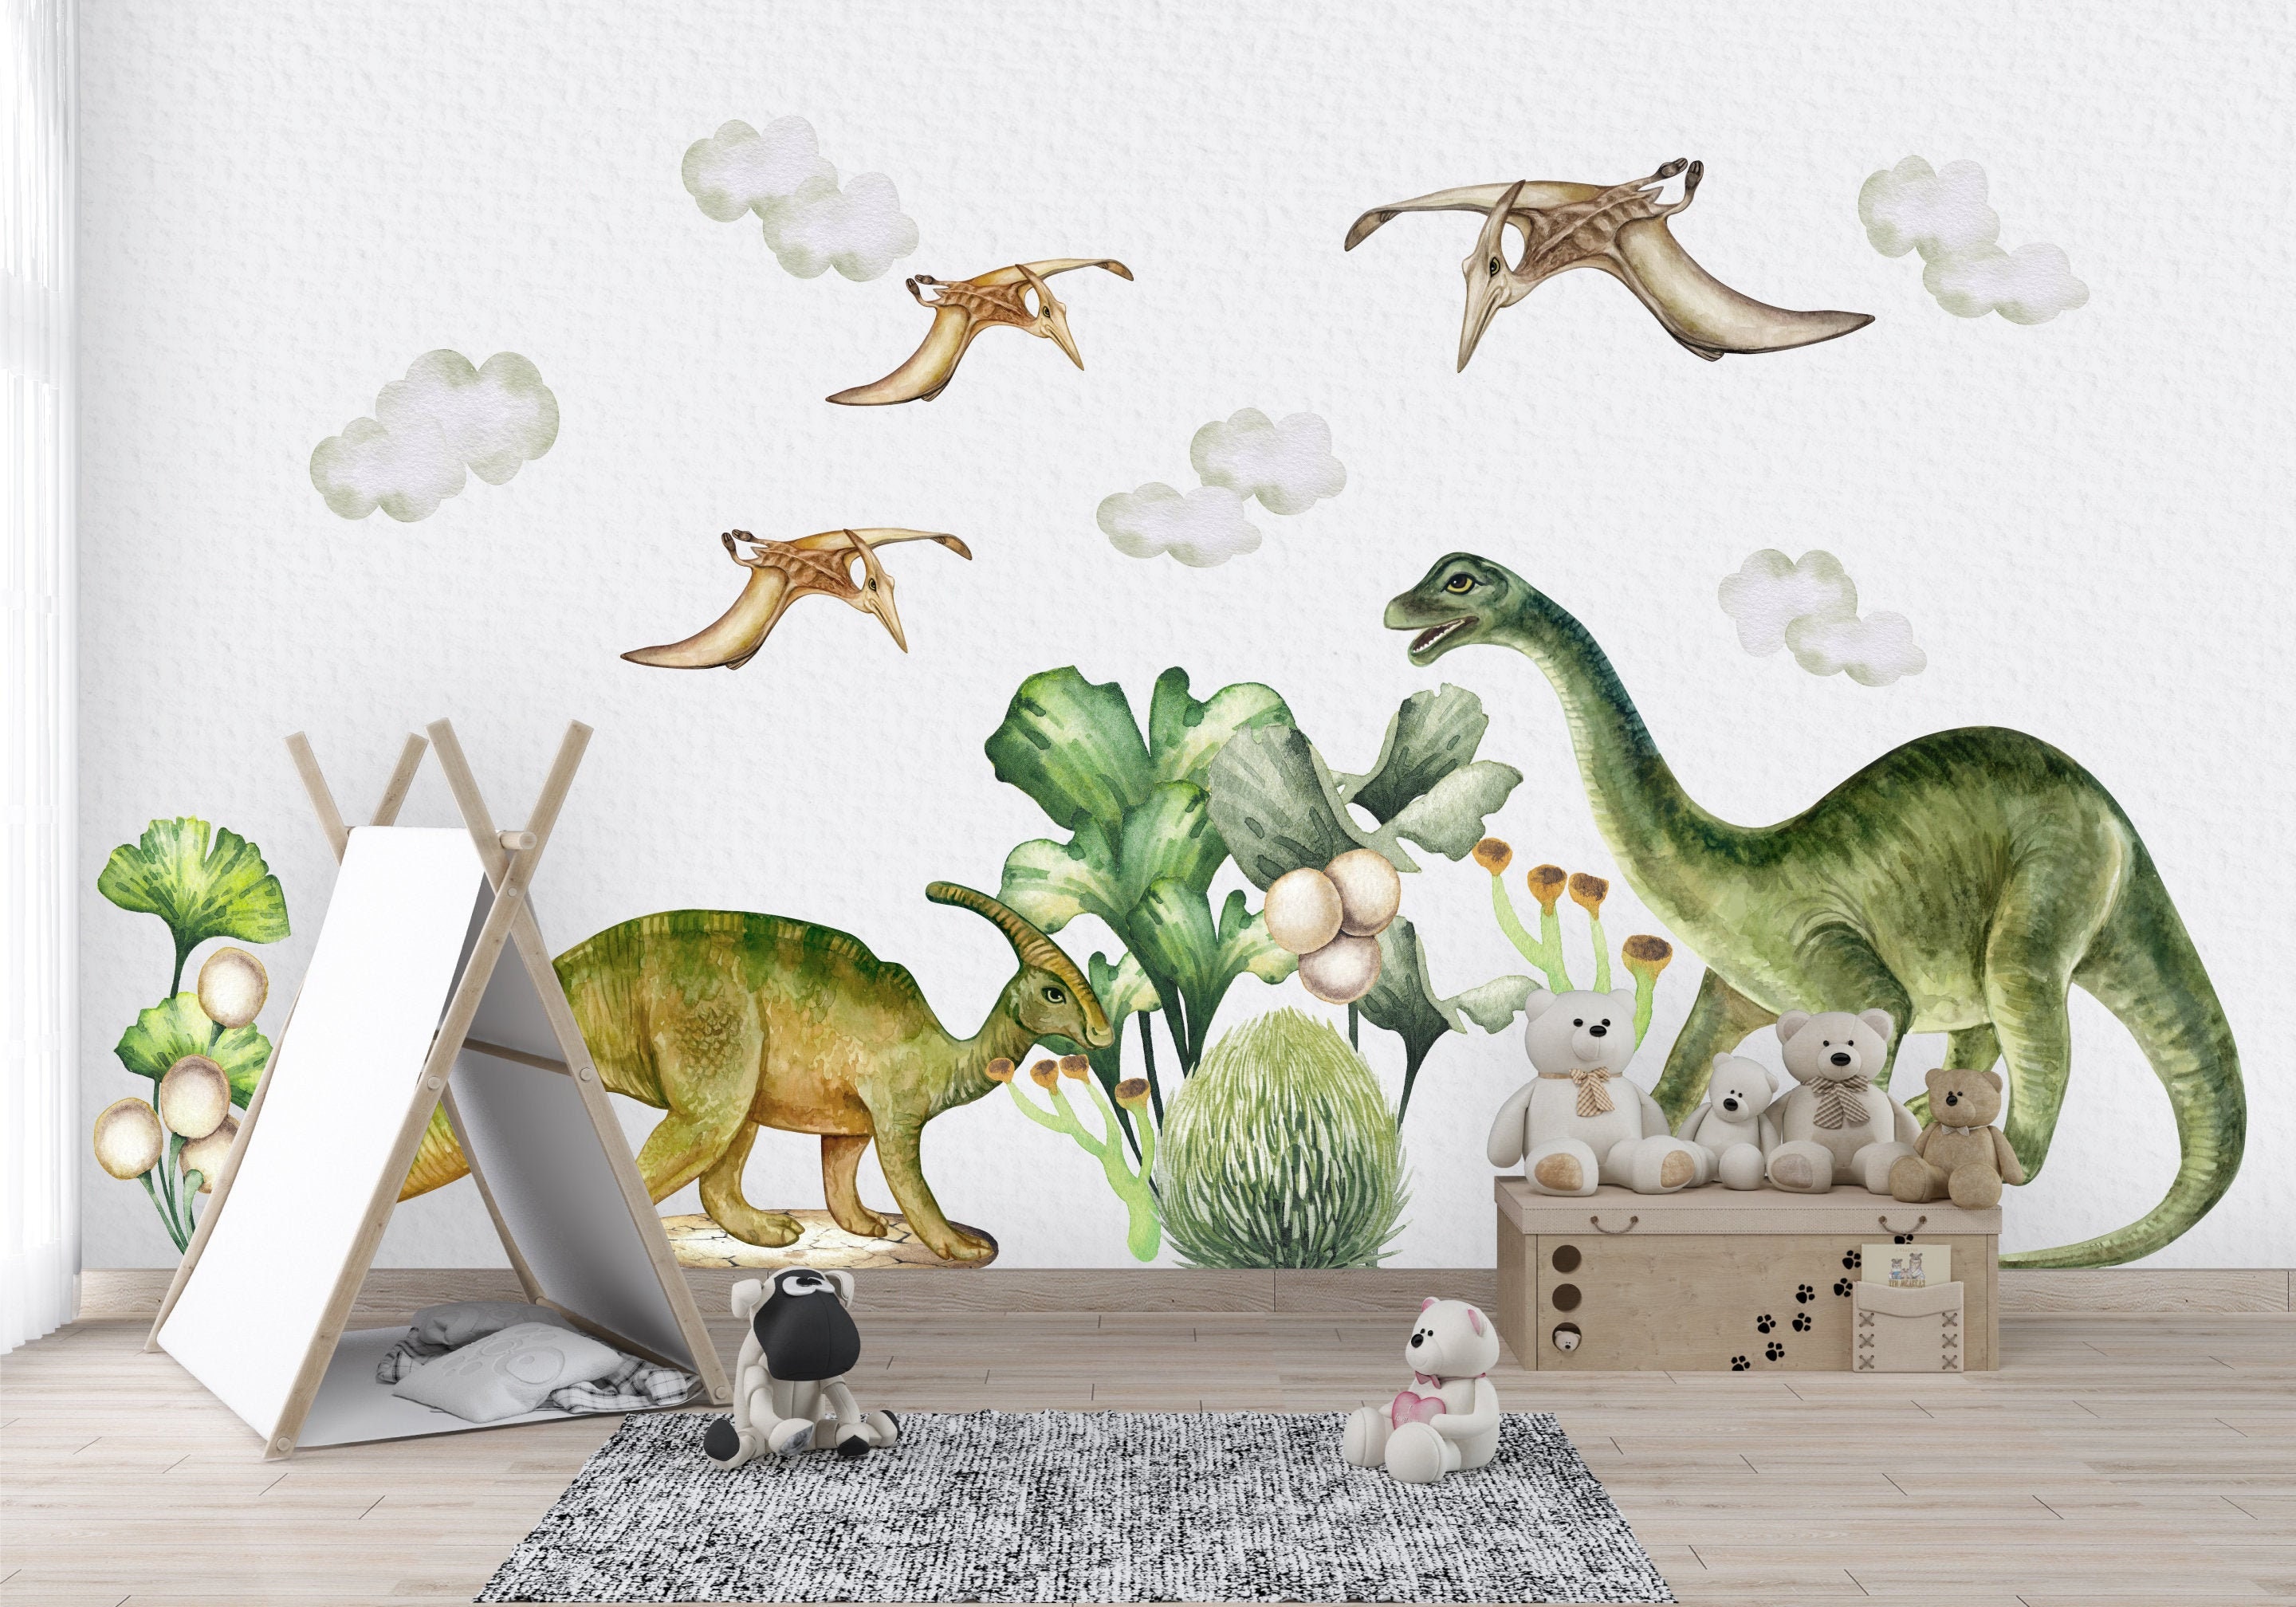 BFMBCH Personnalité Dinosaure Sticker Mural Chambre Dinosaure Nom Personnalisé Vinyle Applique Famille Garçon Enfant Chambre de Crèche Maison Maison Et Jardin 19 vert 57x38 cm 